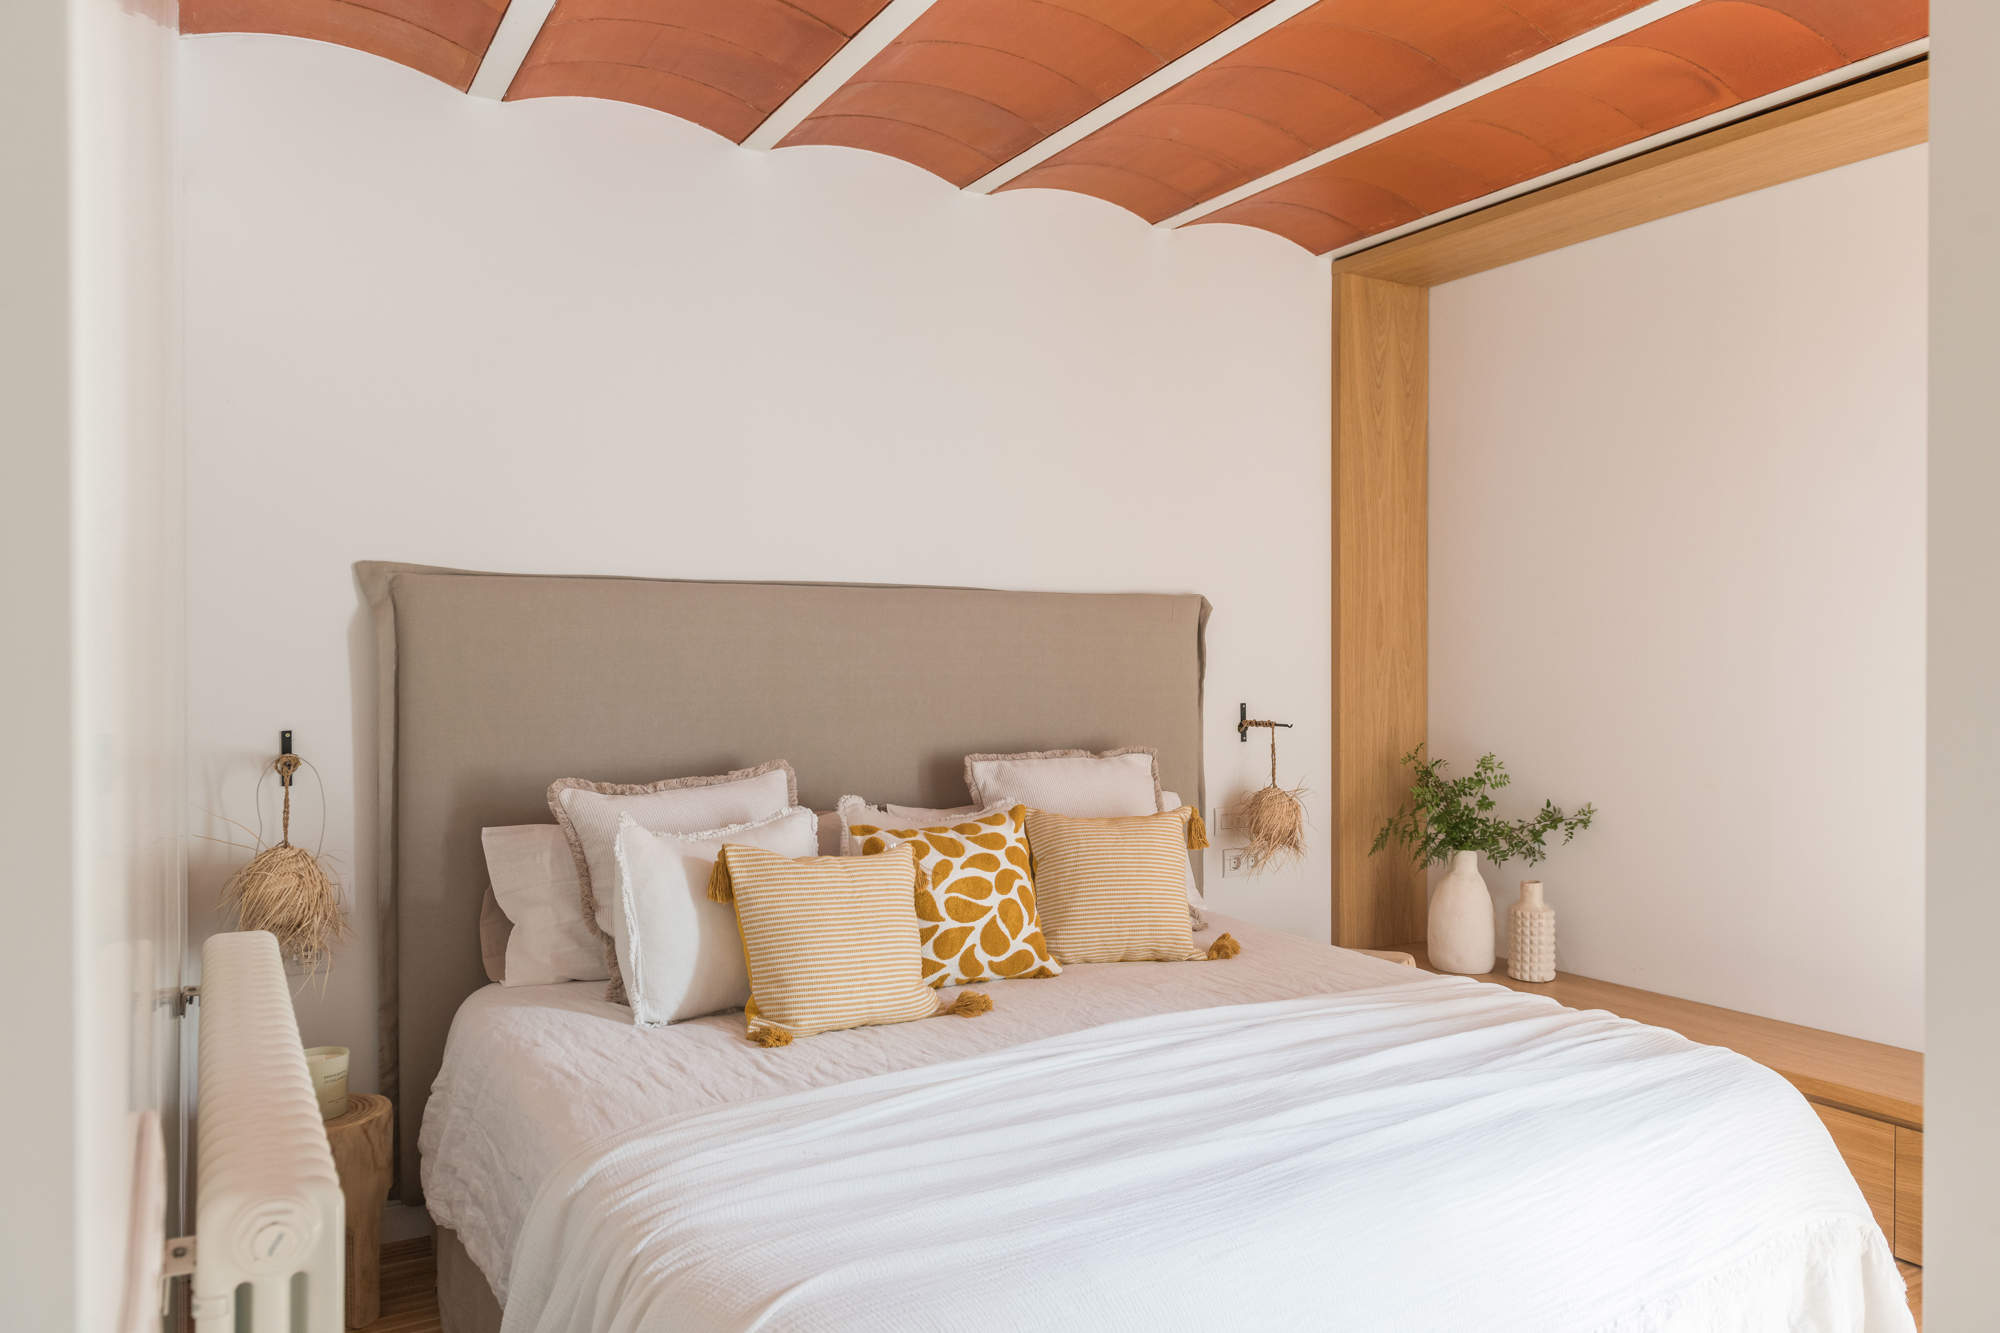 Dormitorio tapizado en lino, ropa de cama de Textura y elementos decorativos de VIVIE y Andrea House.